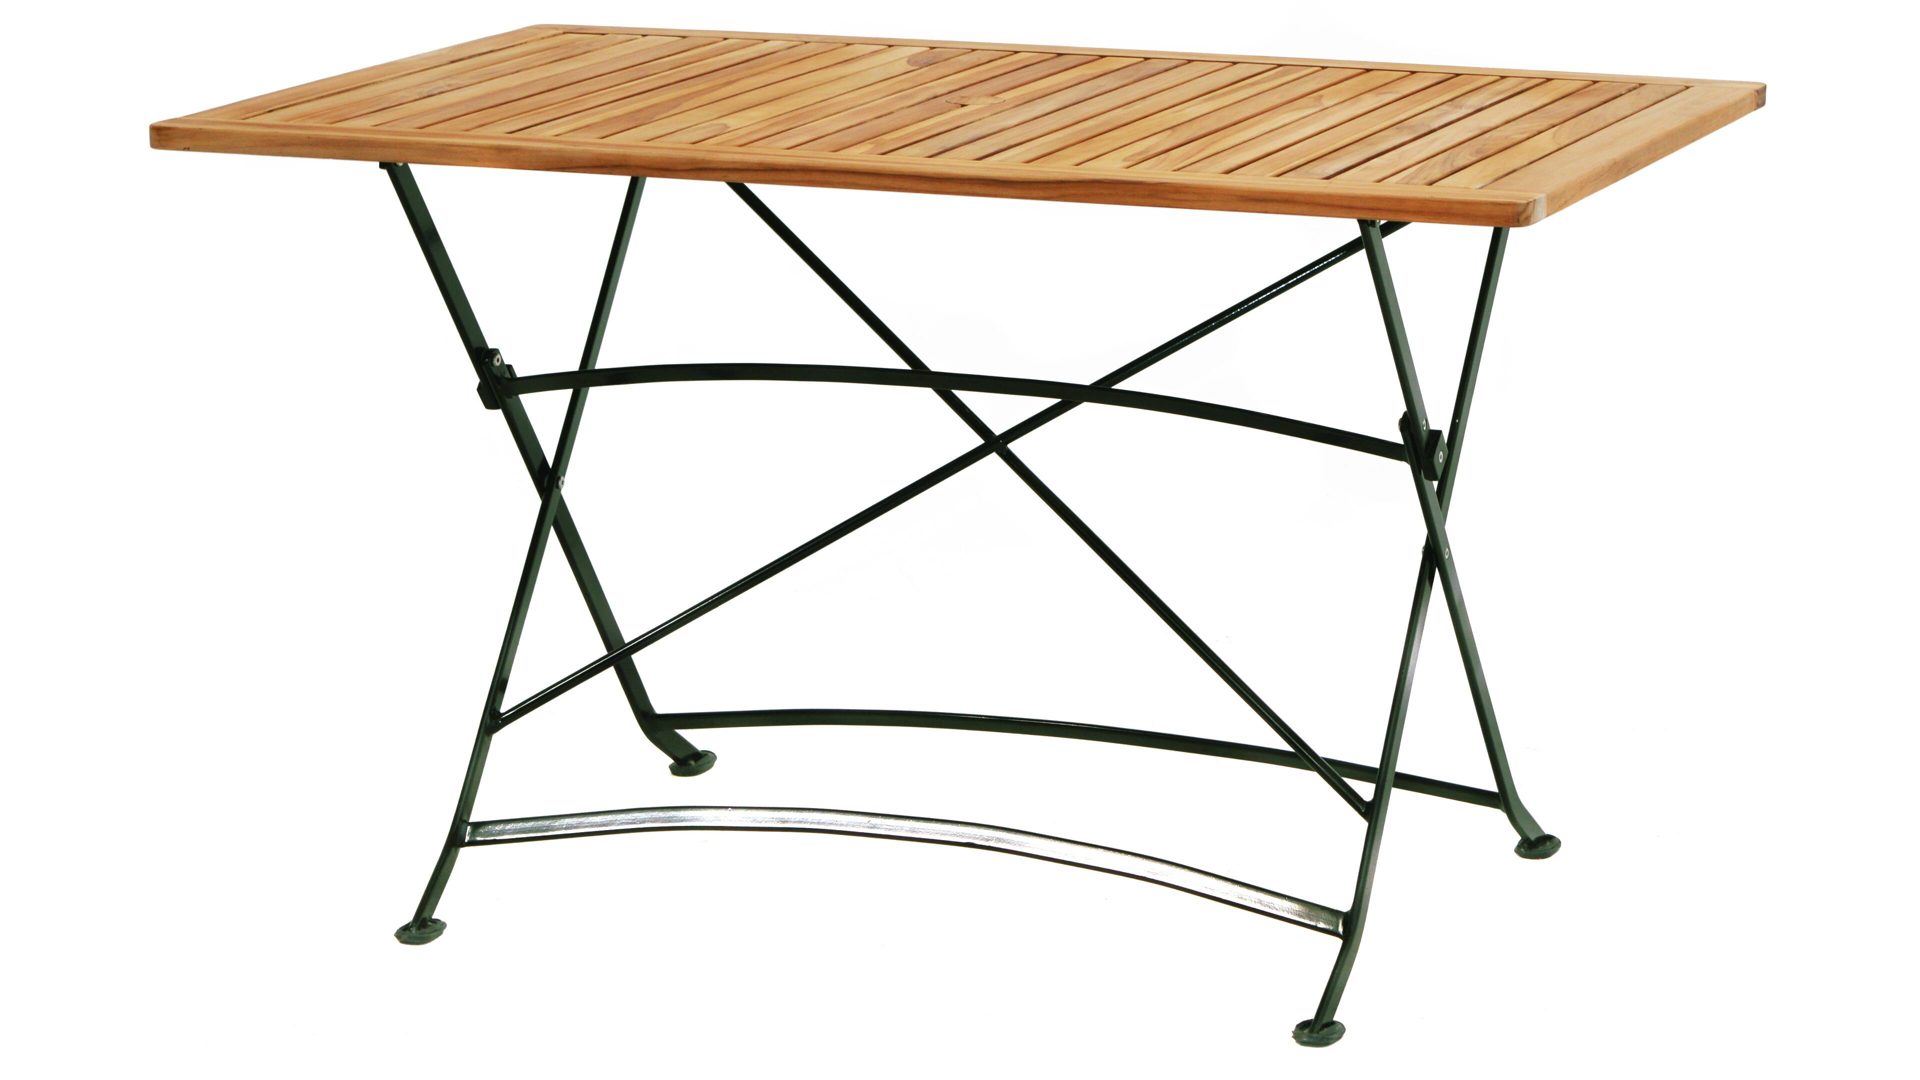 Gartentisch Ploß aus Holz in Holzfarben Ploß® Klapptisch Verona bzw. Gartentisch grünes Eisengestell & Teakholz – ca. 130 x 80 cm